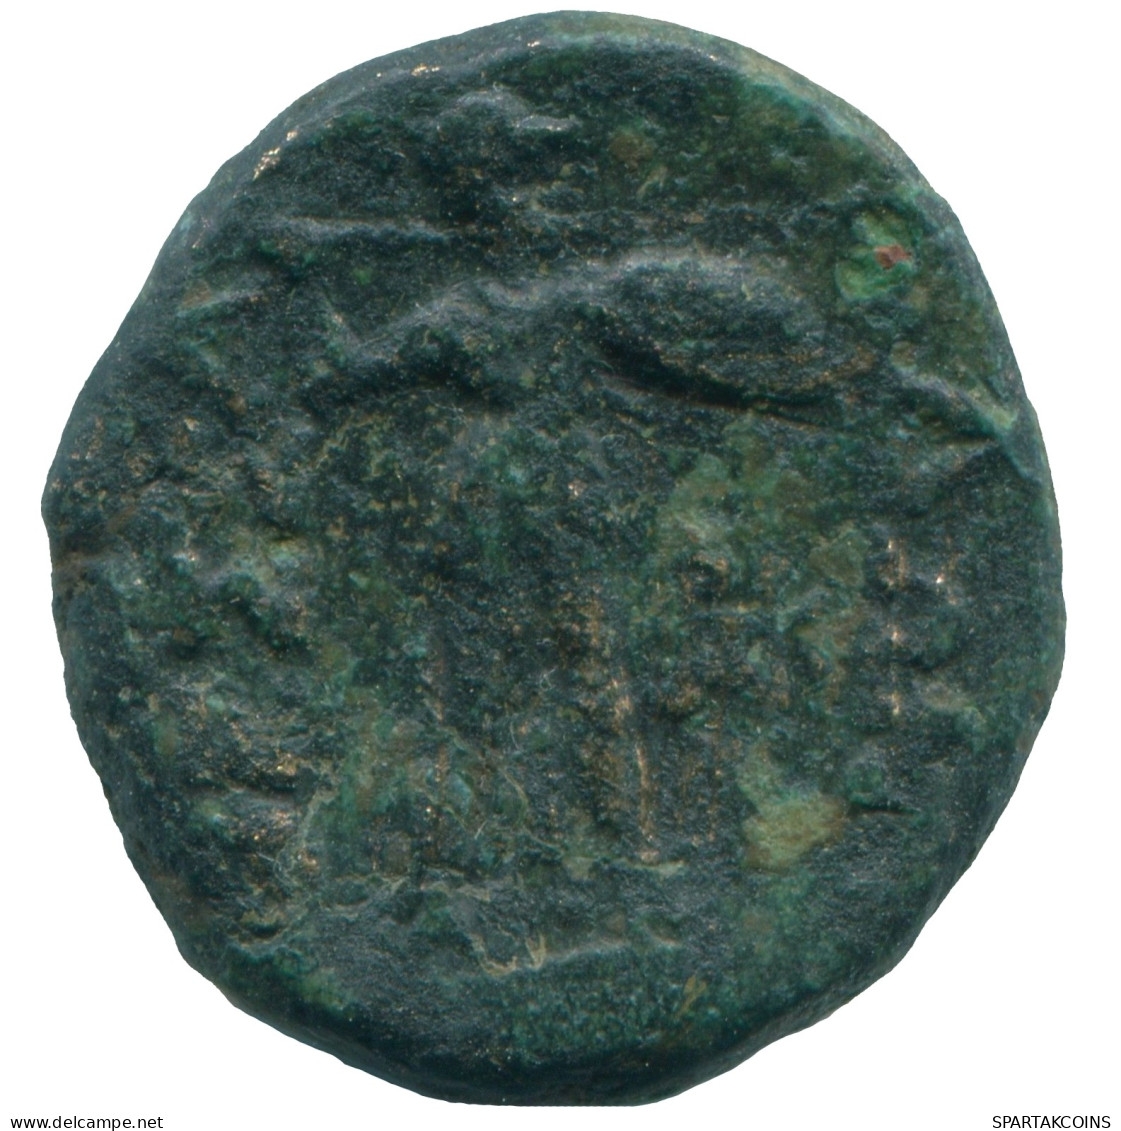 Authentic Original Ancient GRIECHISCHE Münze ATHENA 6.6g/19.6mm #ANC13018.7.D.A - Greek